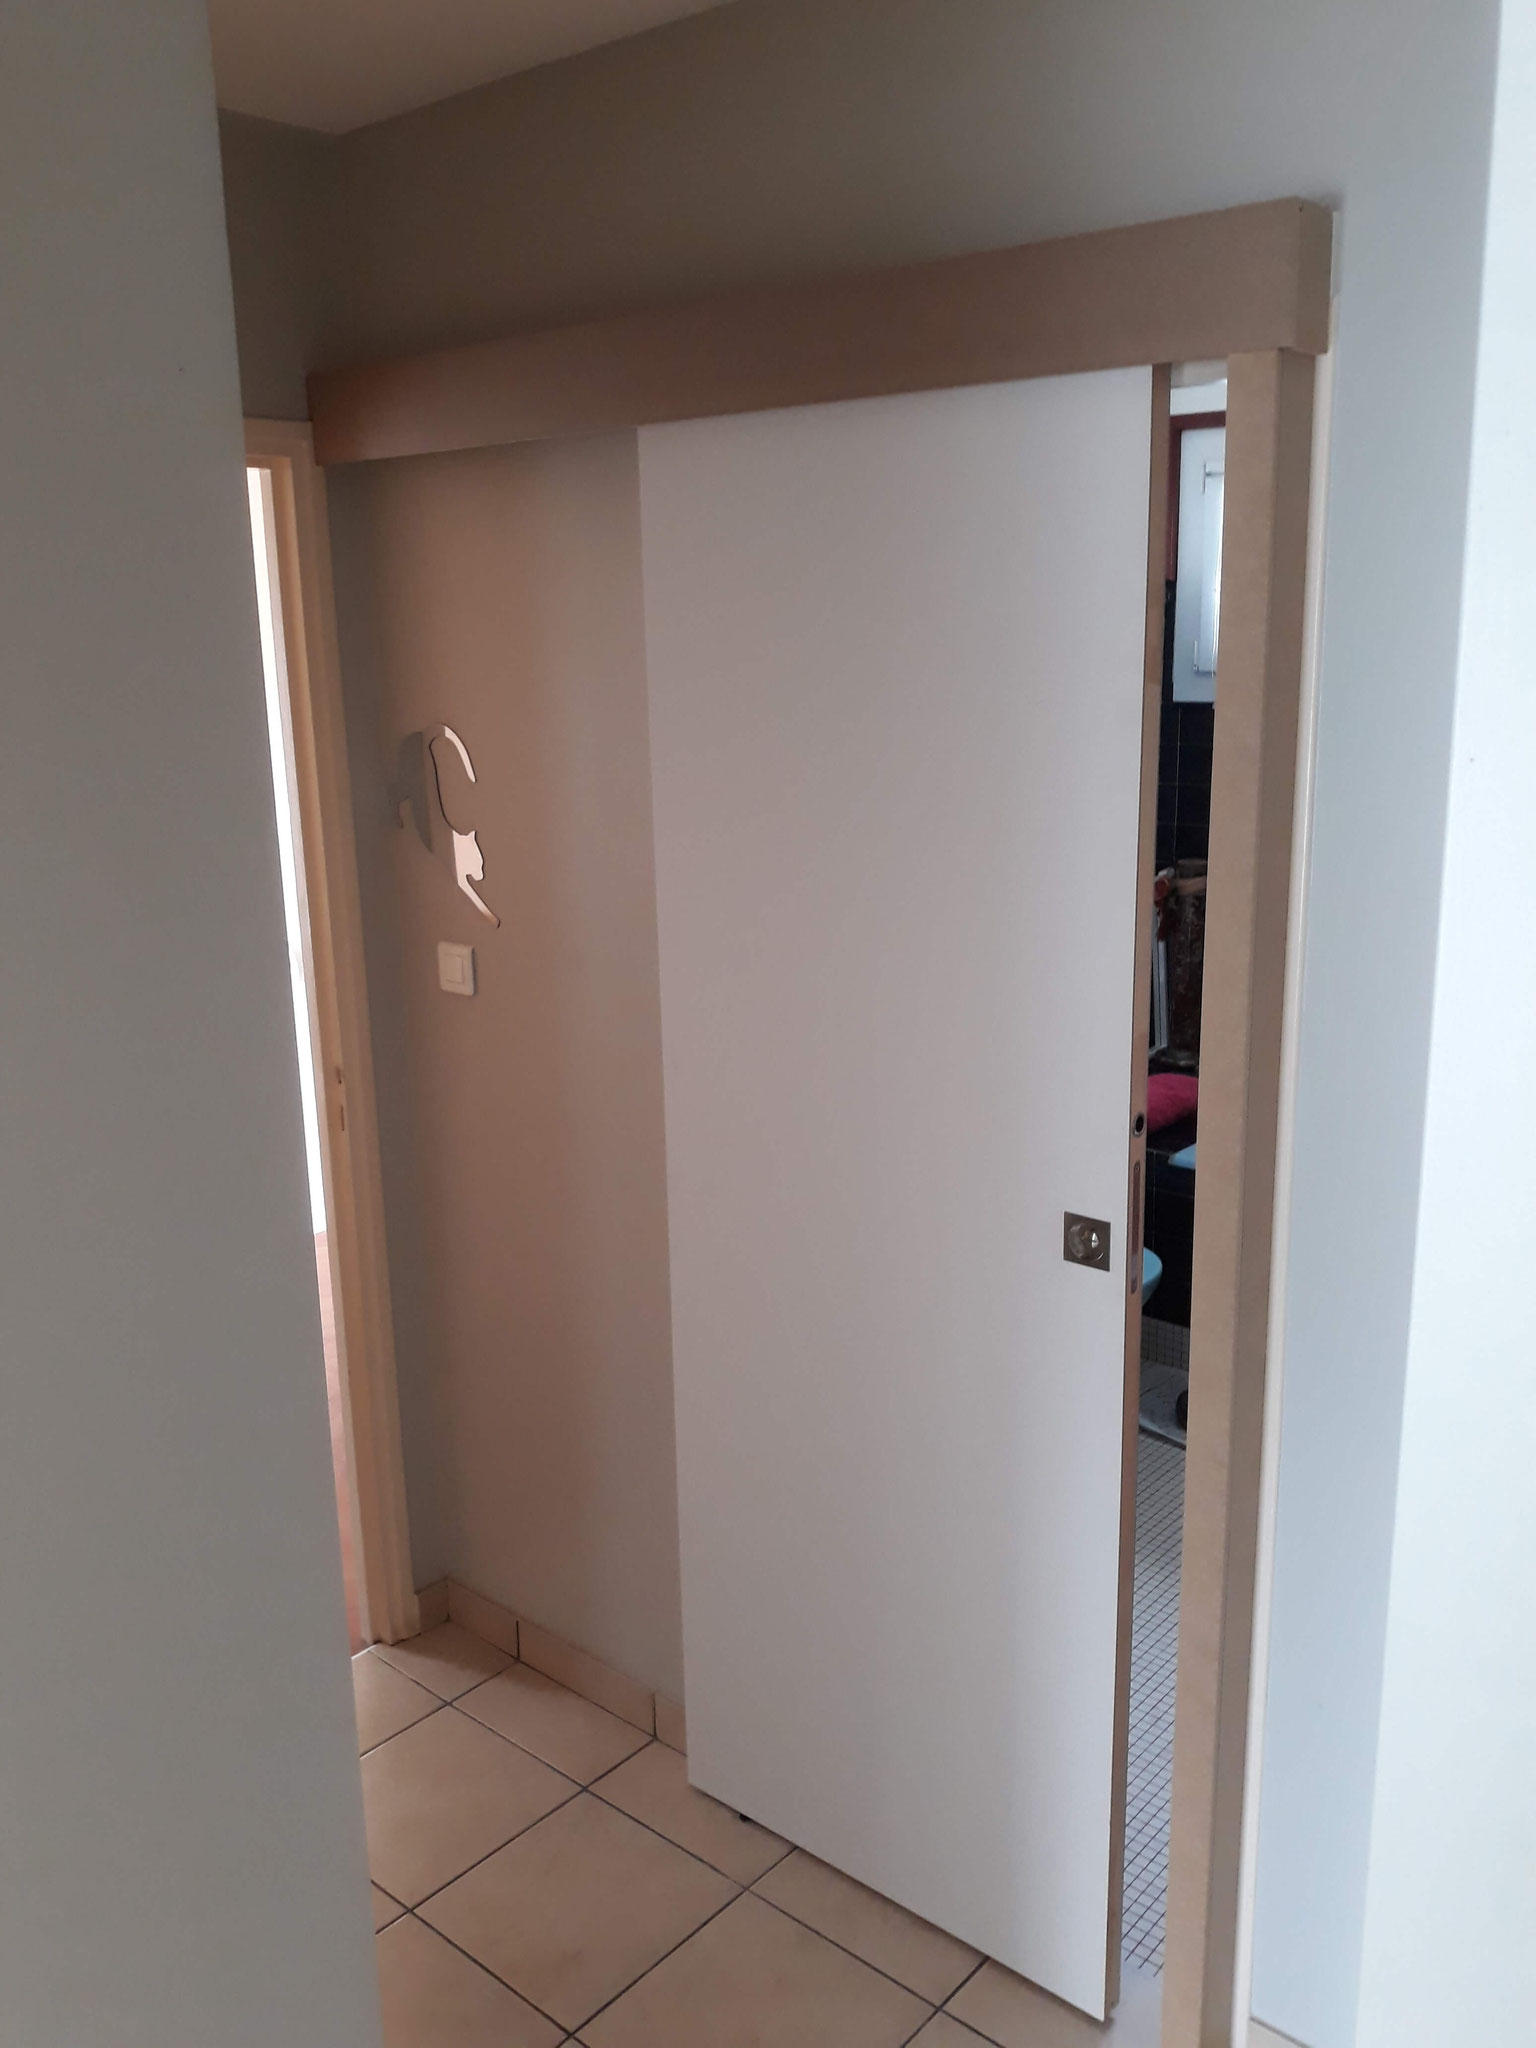 Remplacement de porte de salle de bain par une porte coulissante